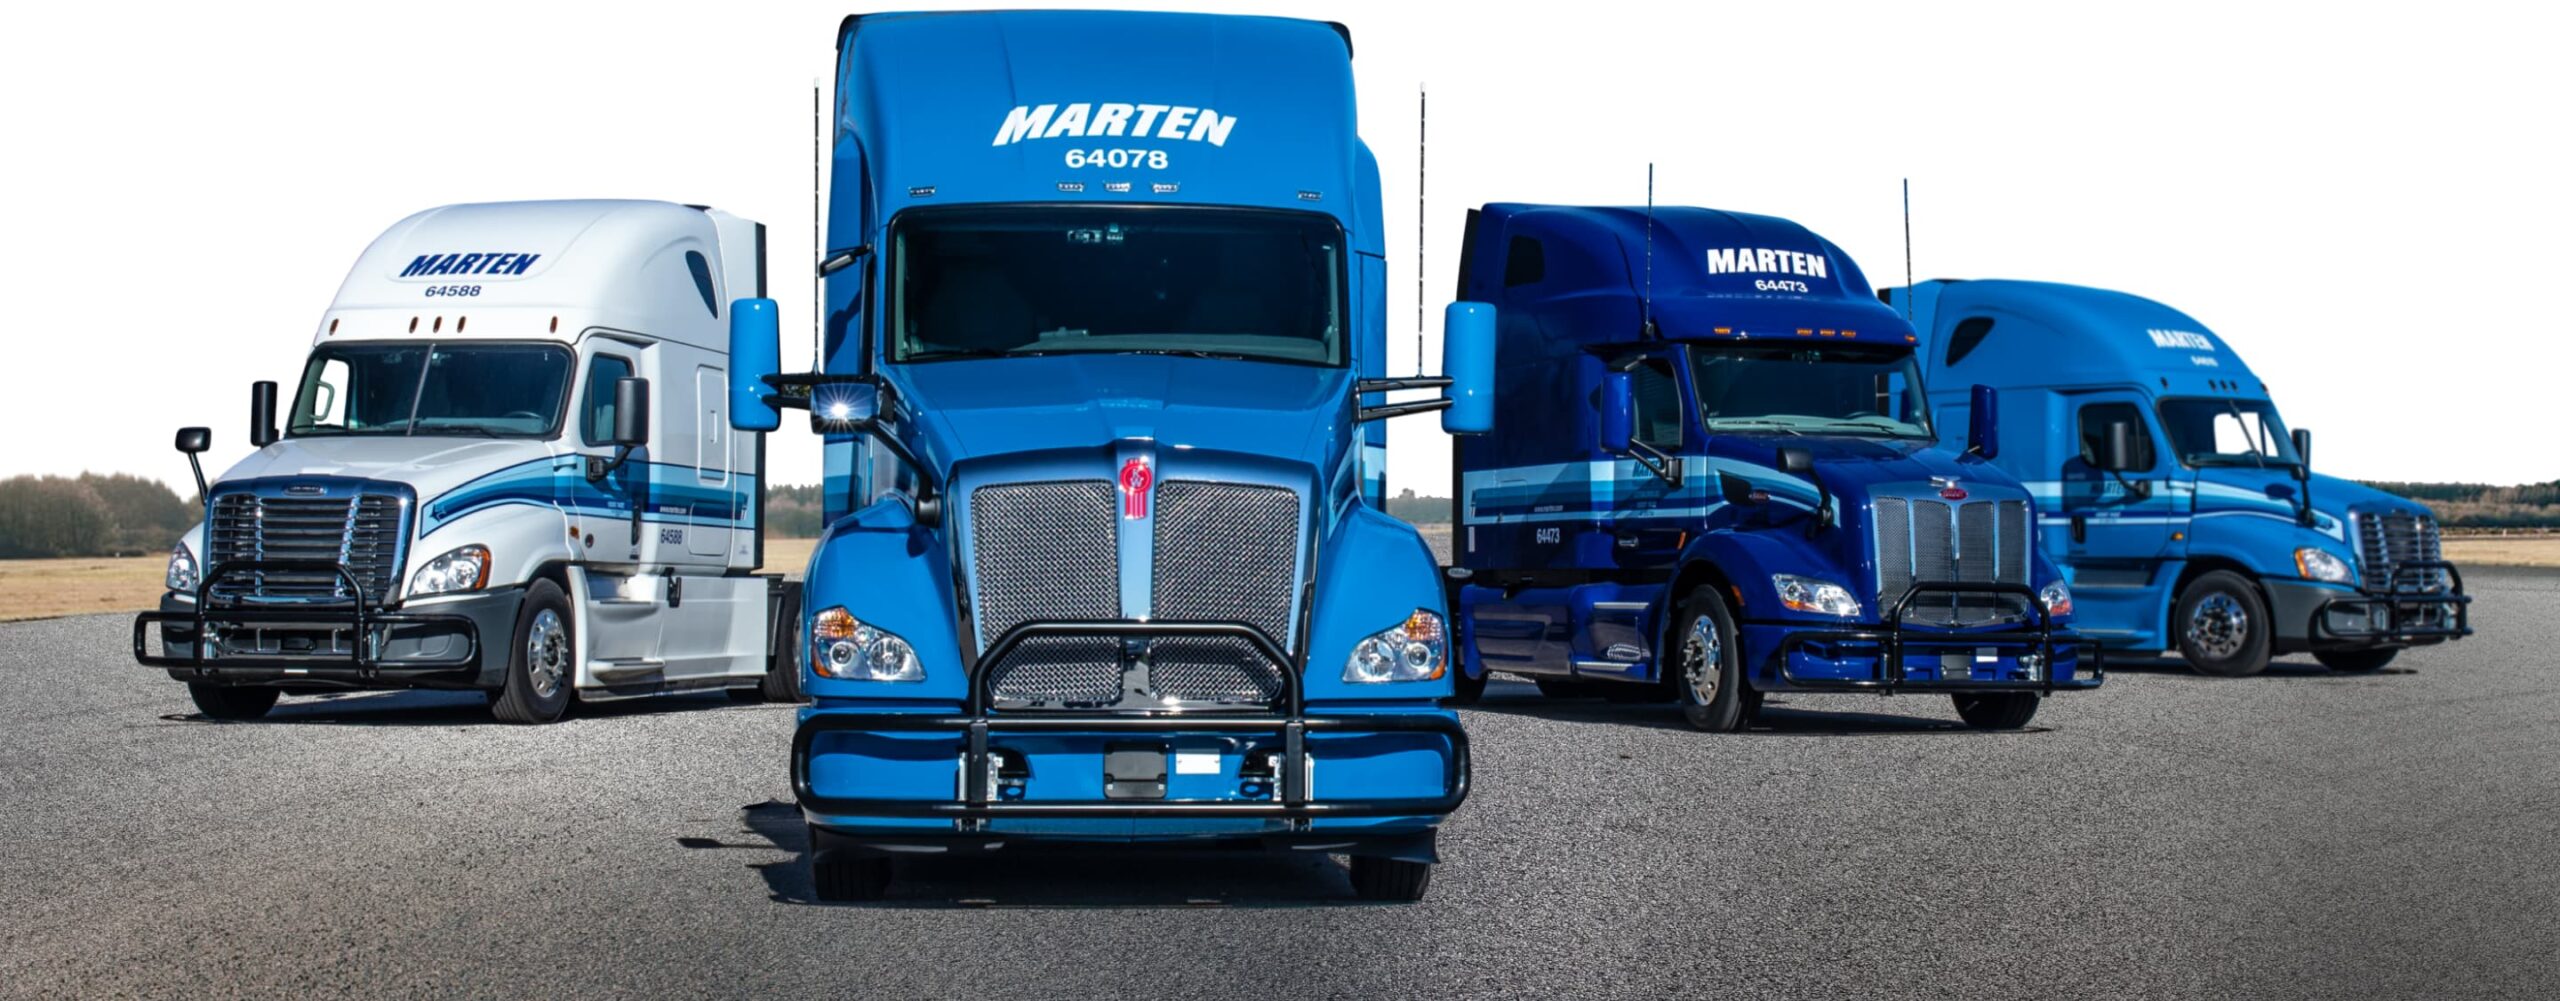 Marten Transport Trucks Lineup